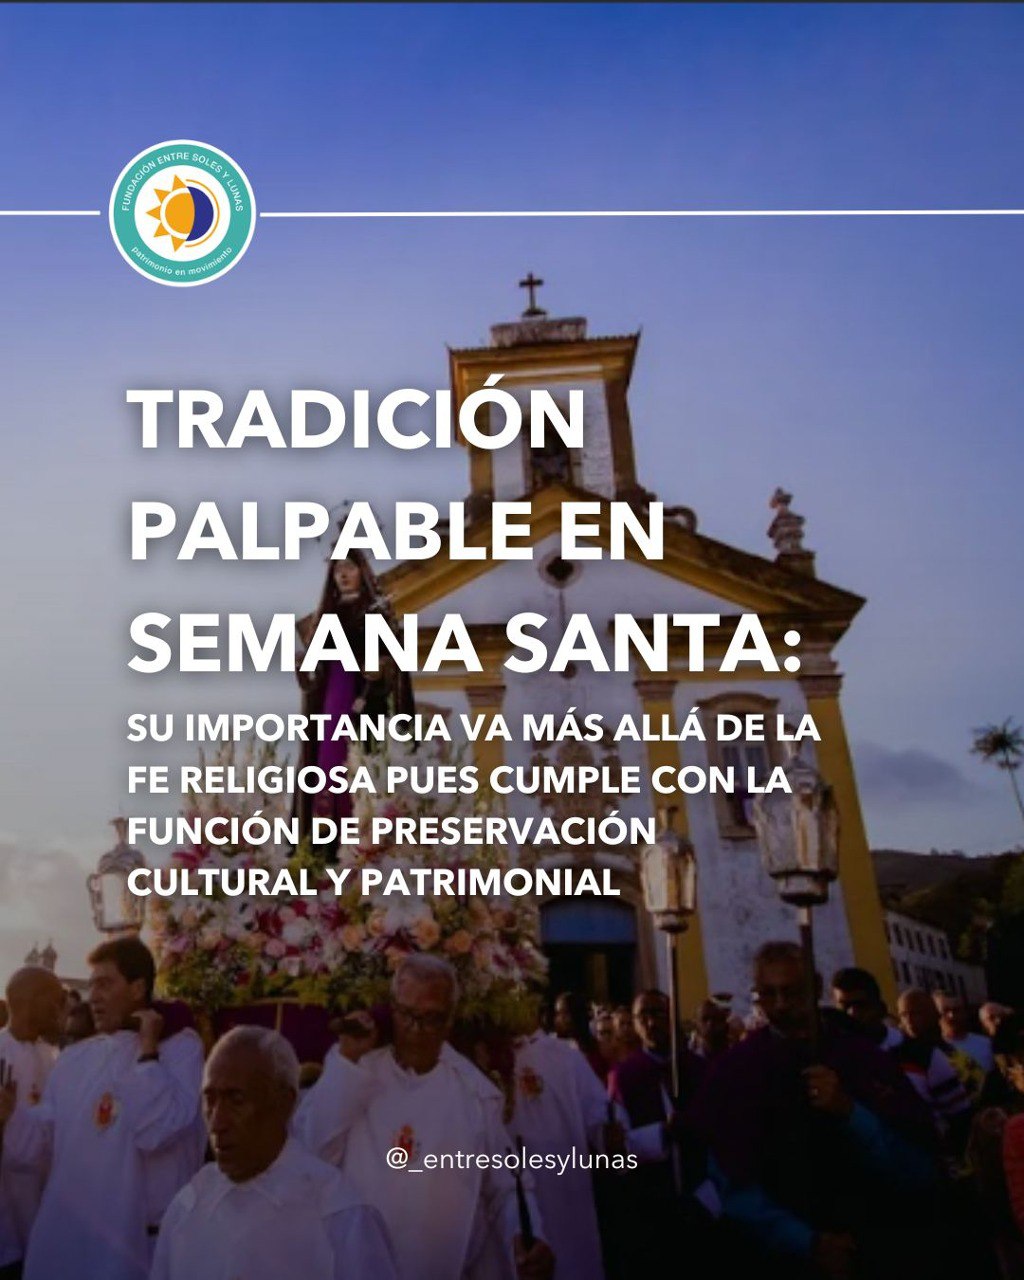 Semana santa en América Latina: religión, imposición, cultura o tradición